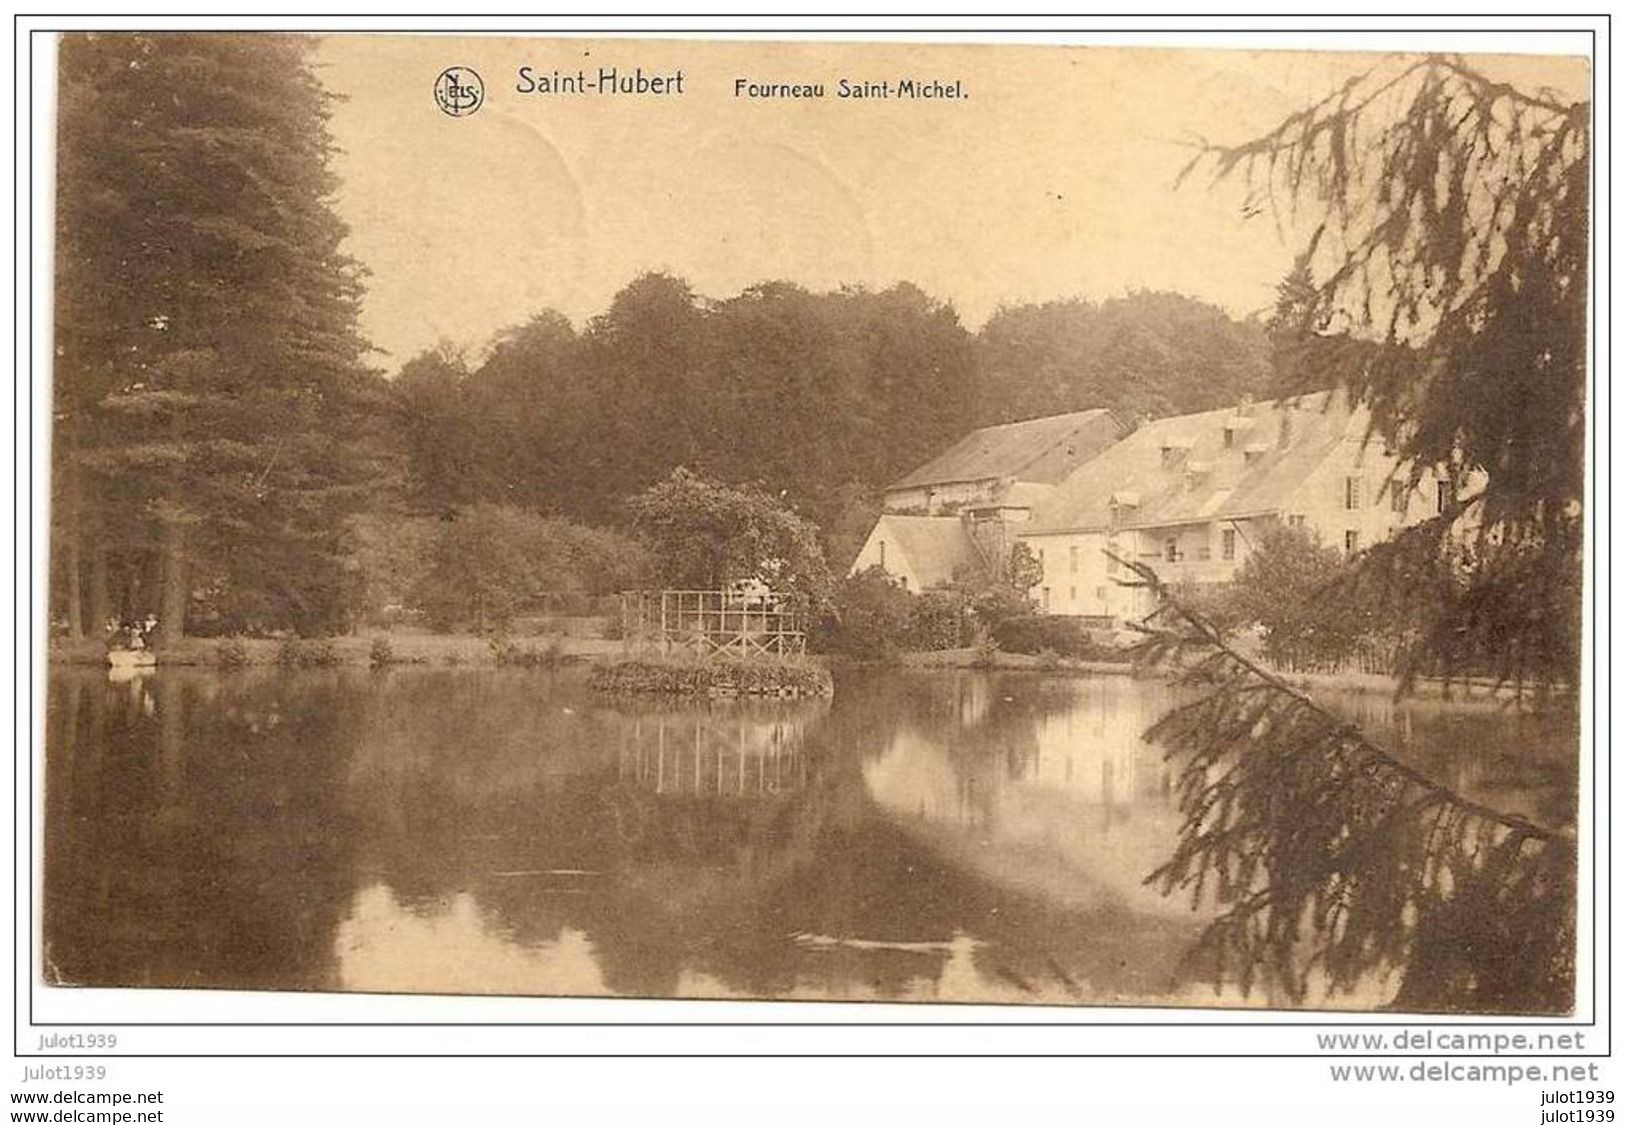 BLIER . SAINT - HUBERT ..-- Fourneau St - Michel ..-- 1921 BLIER ( Melle Rosalie GRANDJEAN  Au Château ) .  Voir Verso . - Erezée